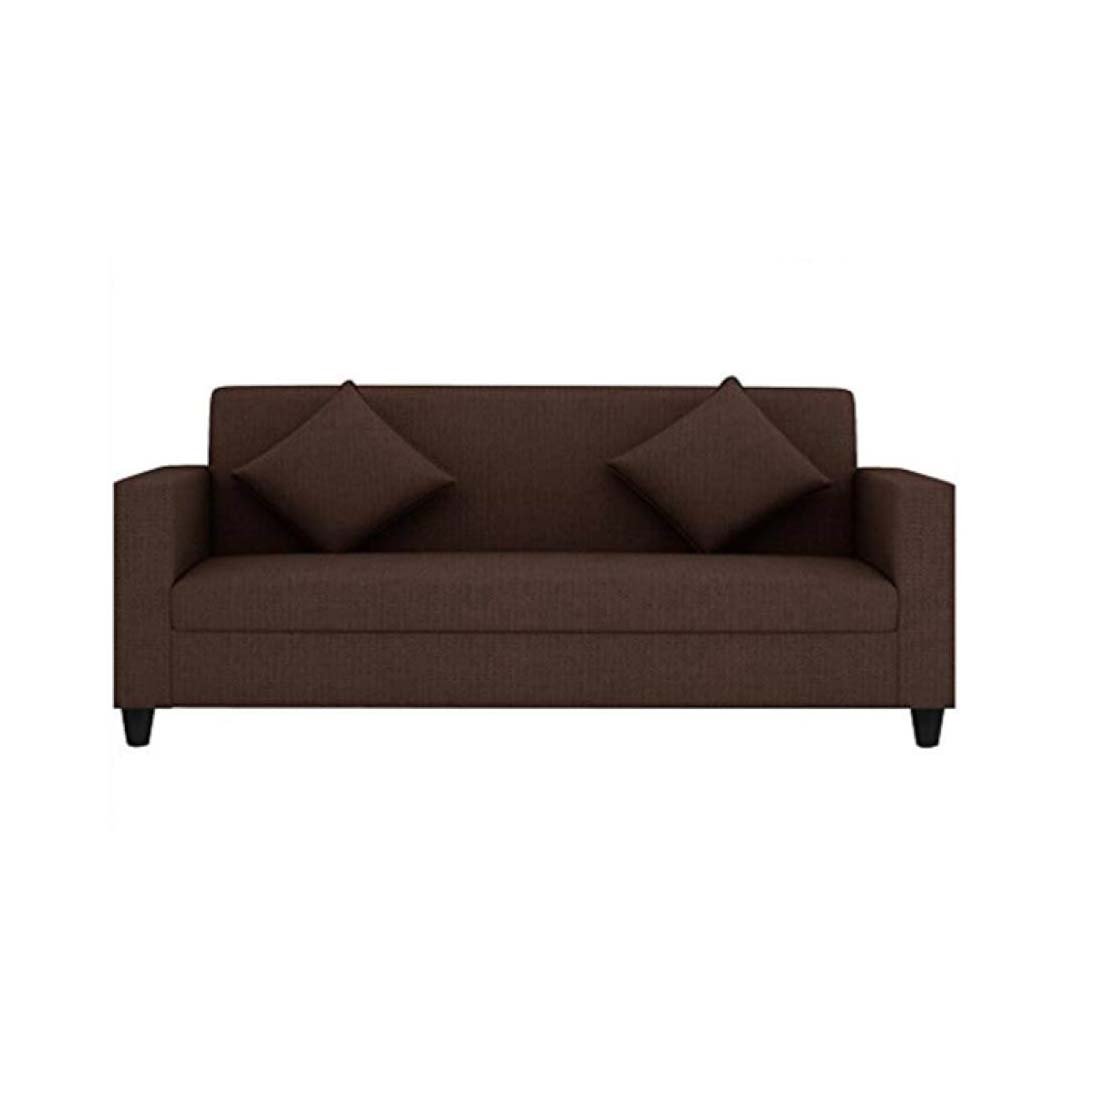 Torque India Celestia 3 Seater Fabric Sofa With Cushion For Living Room - TorqueIndia